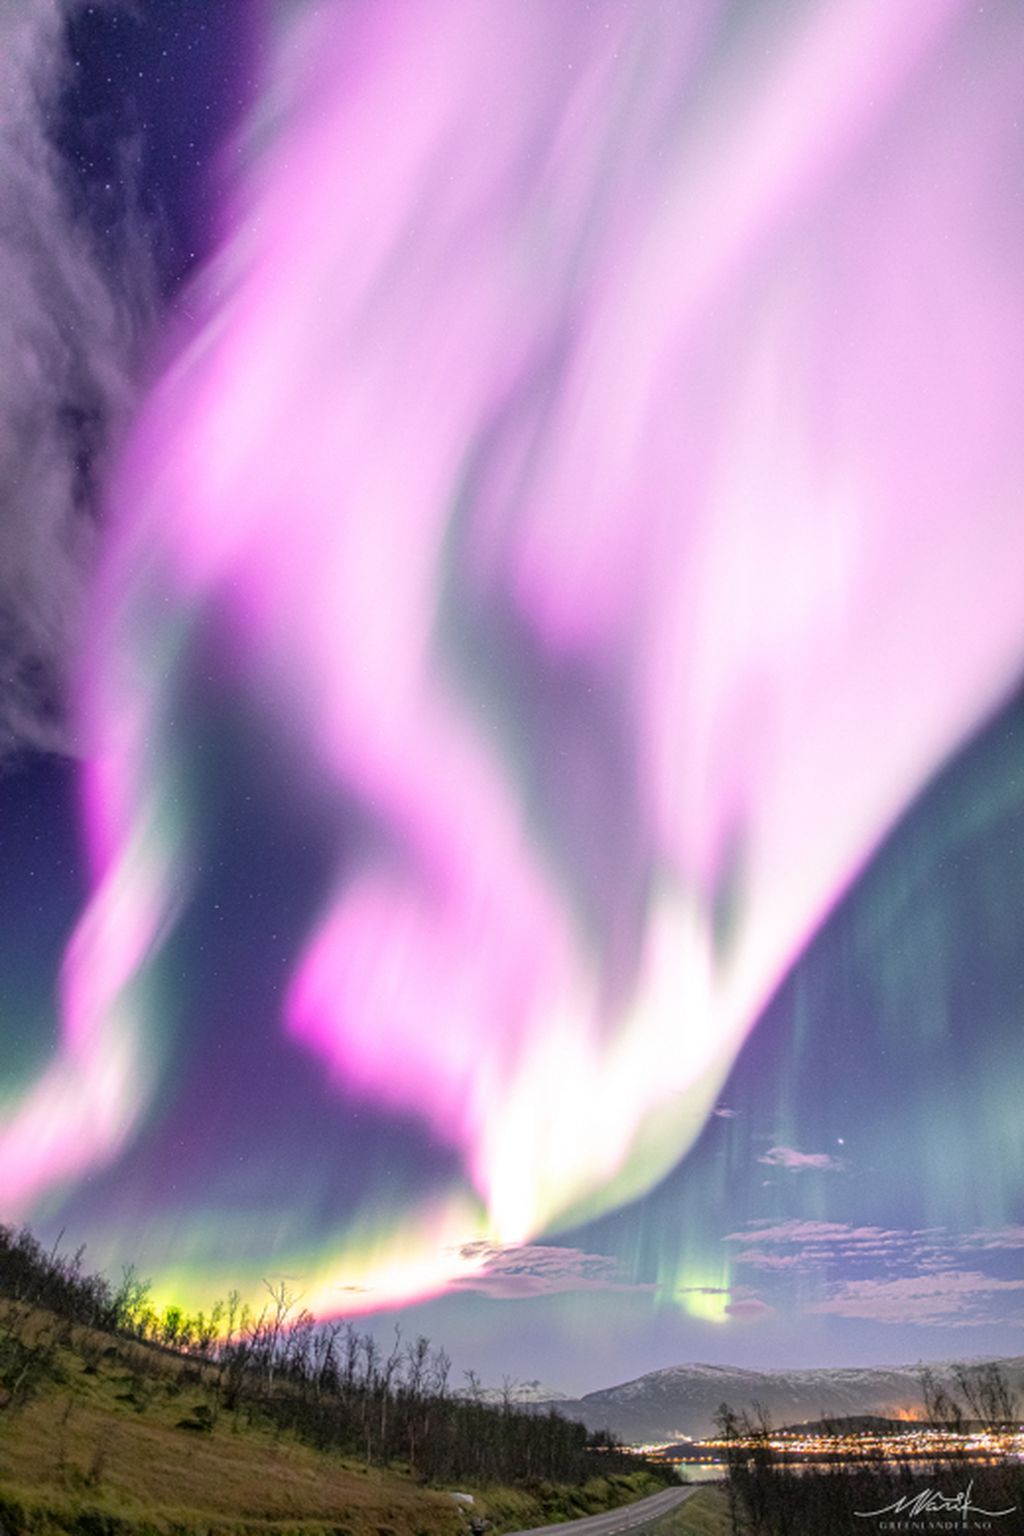 Aurora merah muda berhasil dipotret Markus Varik di atas wilayah Tromsø, Norwegia utara, pada 3 November 2022. Aurora merah muda ini langka karena umumnya aurora berwarna hijau. Potret ini kemudian diunggah ke situs Space Weather.